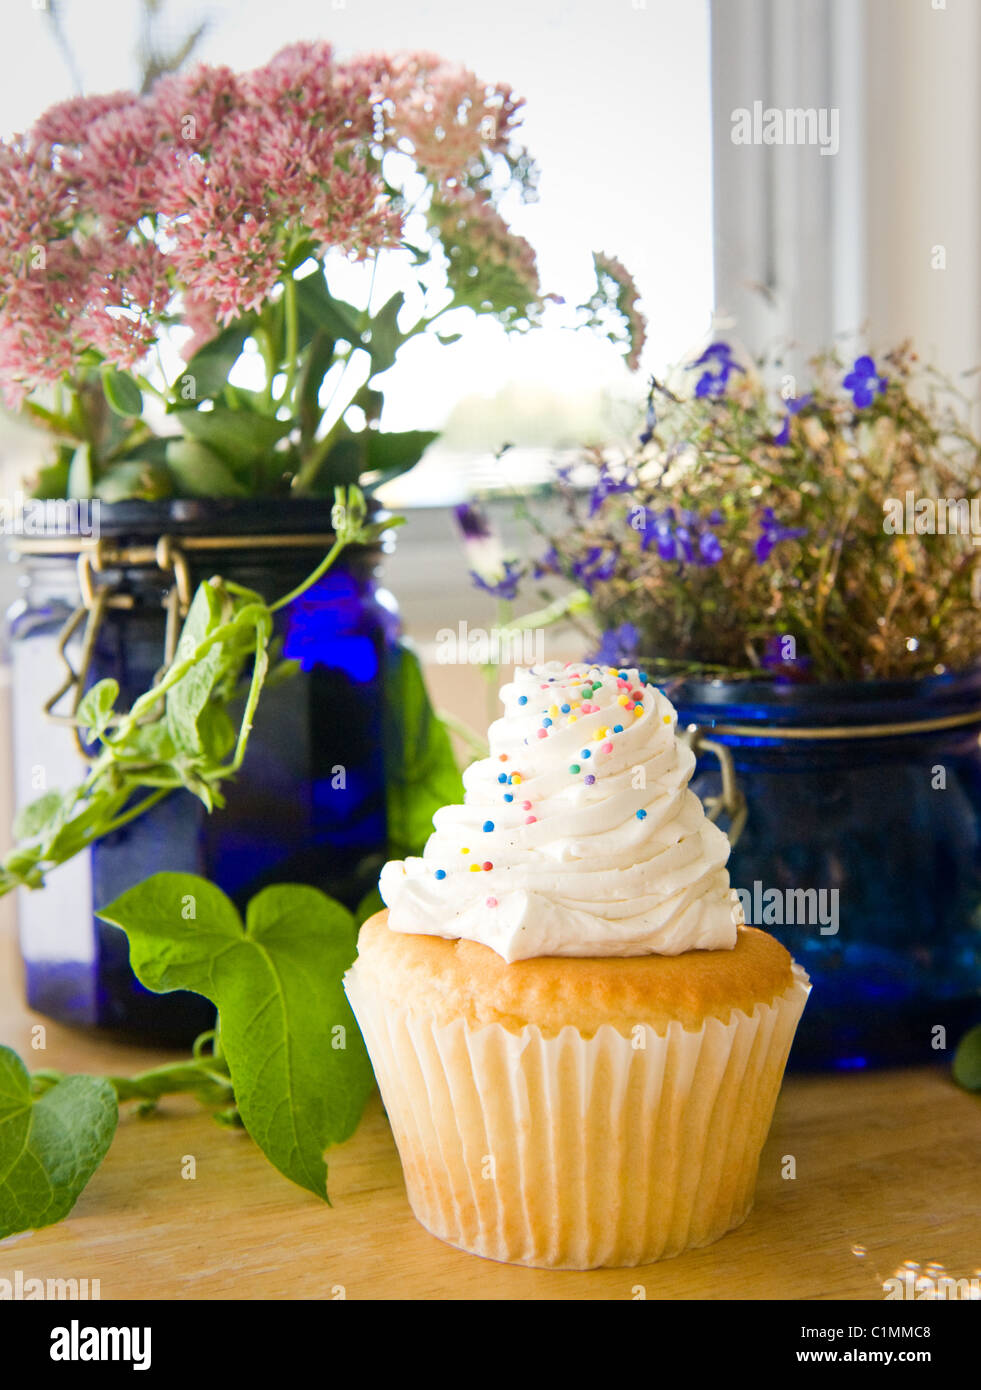 Un petit gâteau entouré de fleurs frais de la campagne Banque D'Images